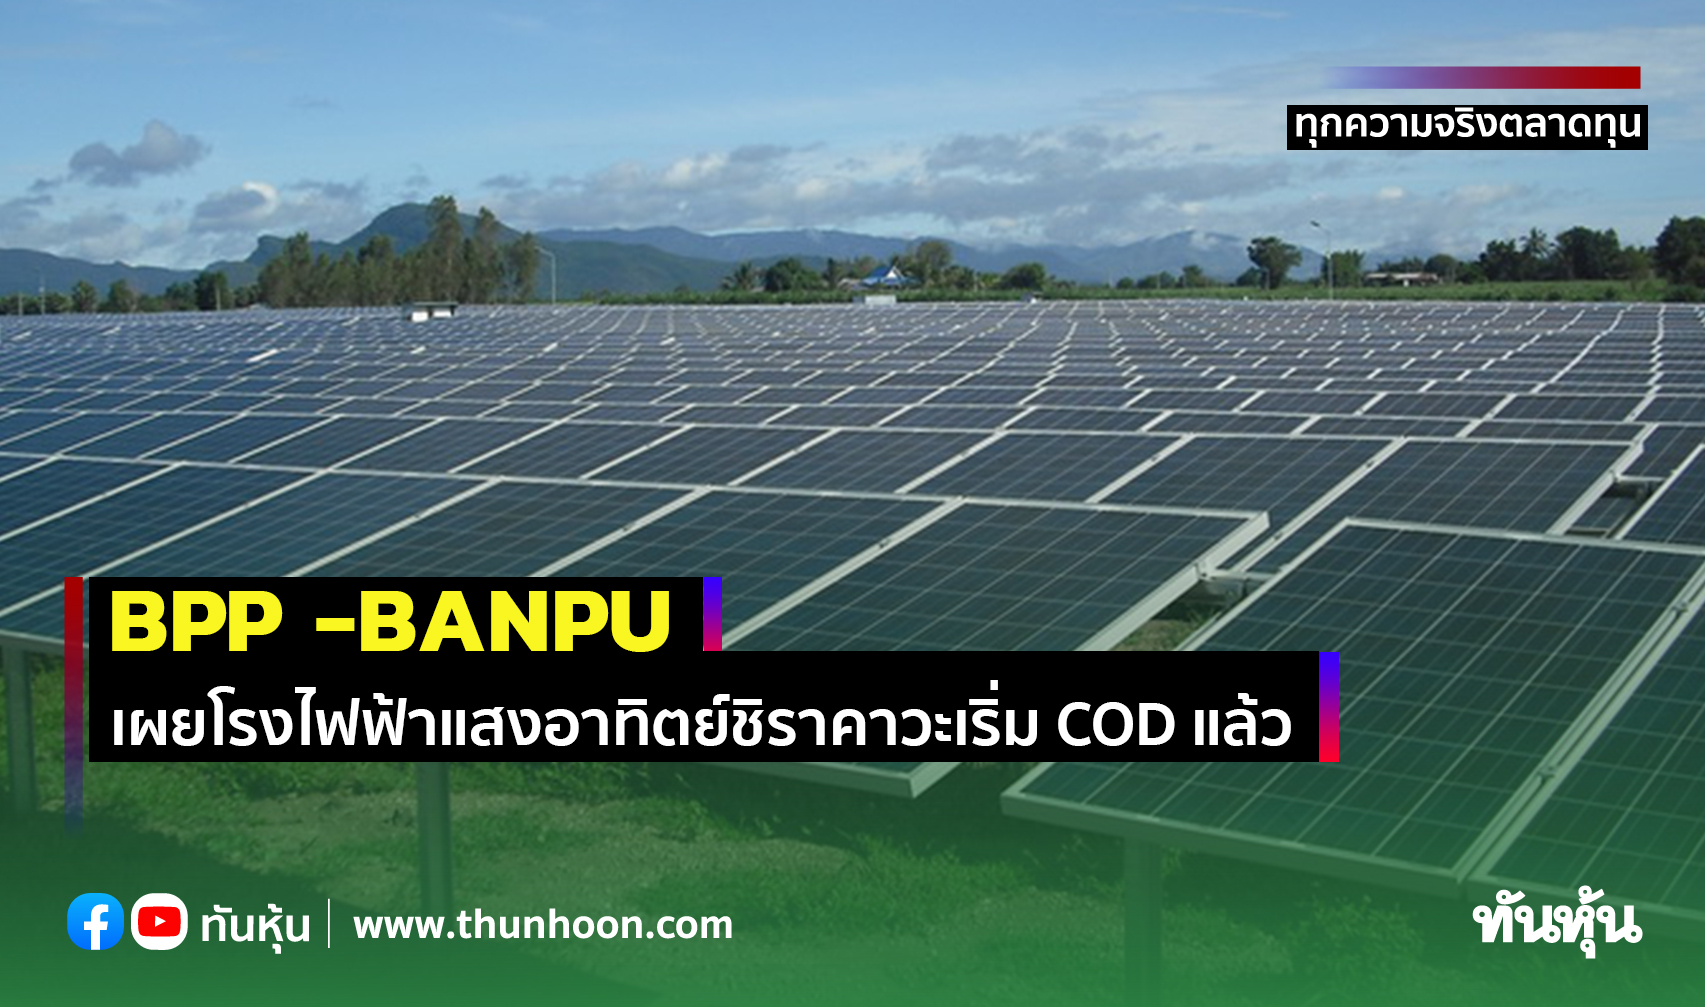 BPP -BANPU เผยโรงไฟฟ้าแสงอาทิตย์ชิราคาวะเริ่ม COD แล้ว, หาโอกาสลงทุนเพิ่ม